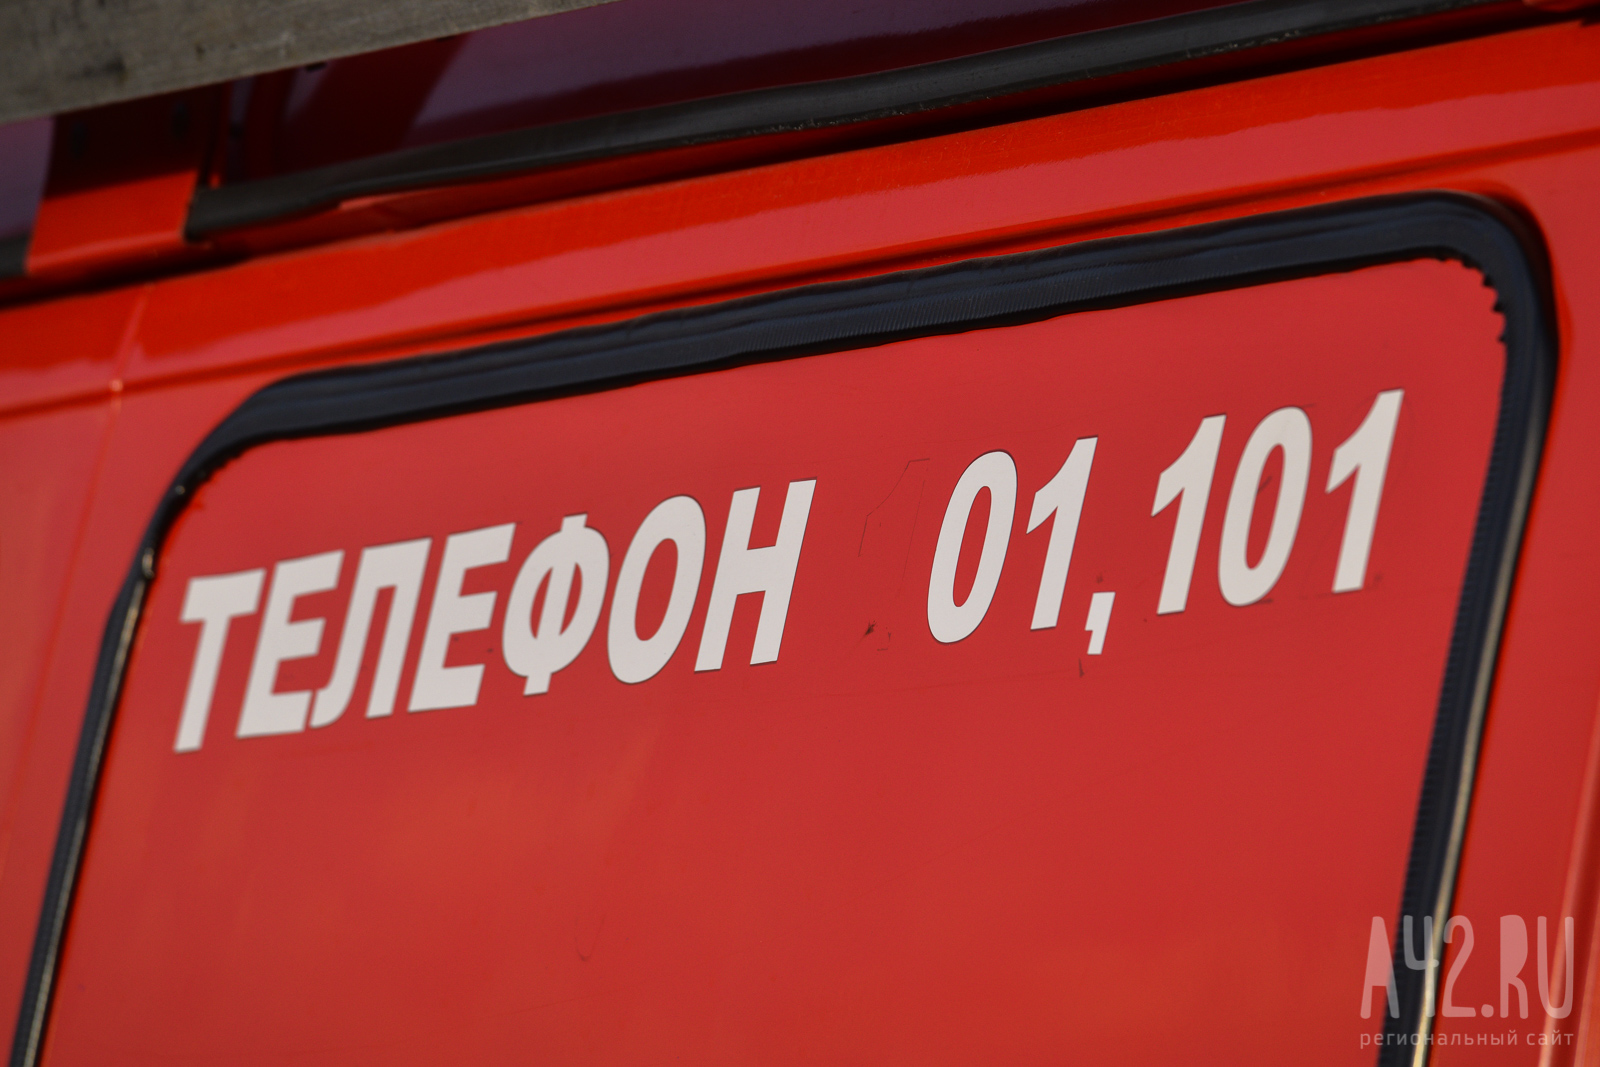 Ростовчанин пострадал при взрыве баллона с газом в квартире 